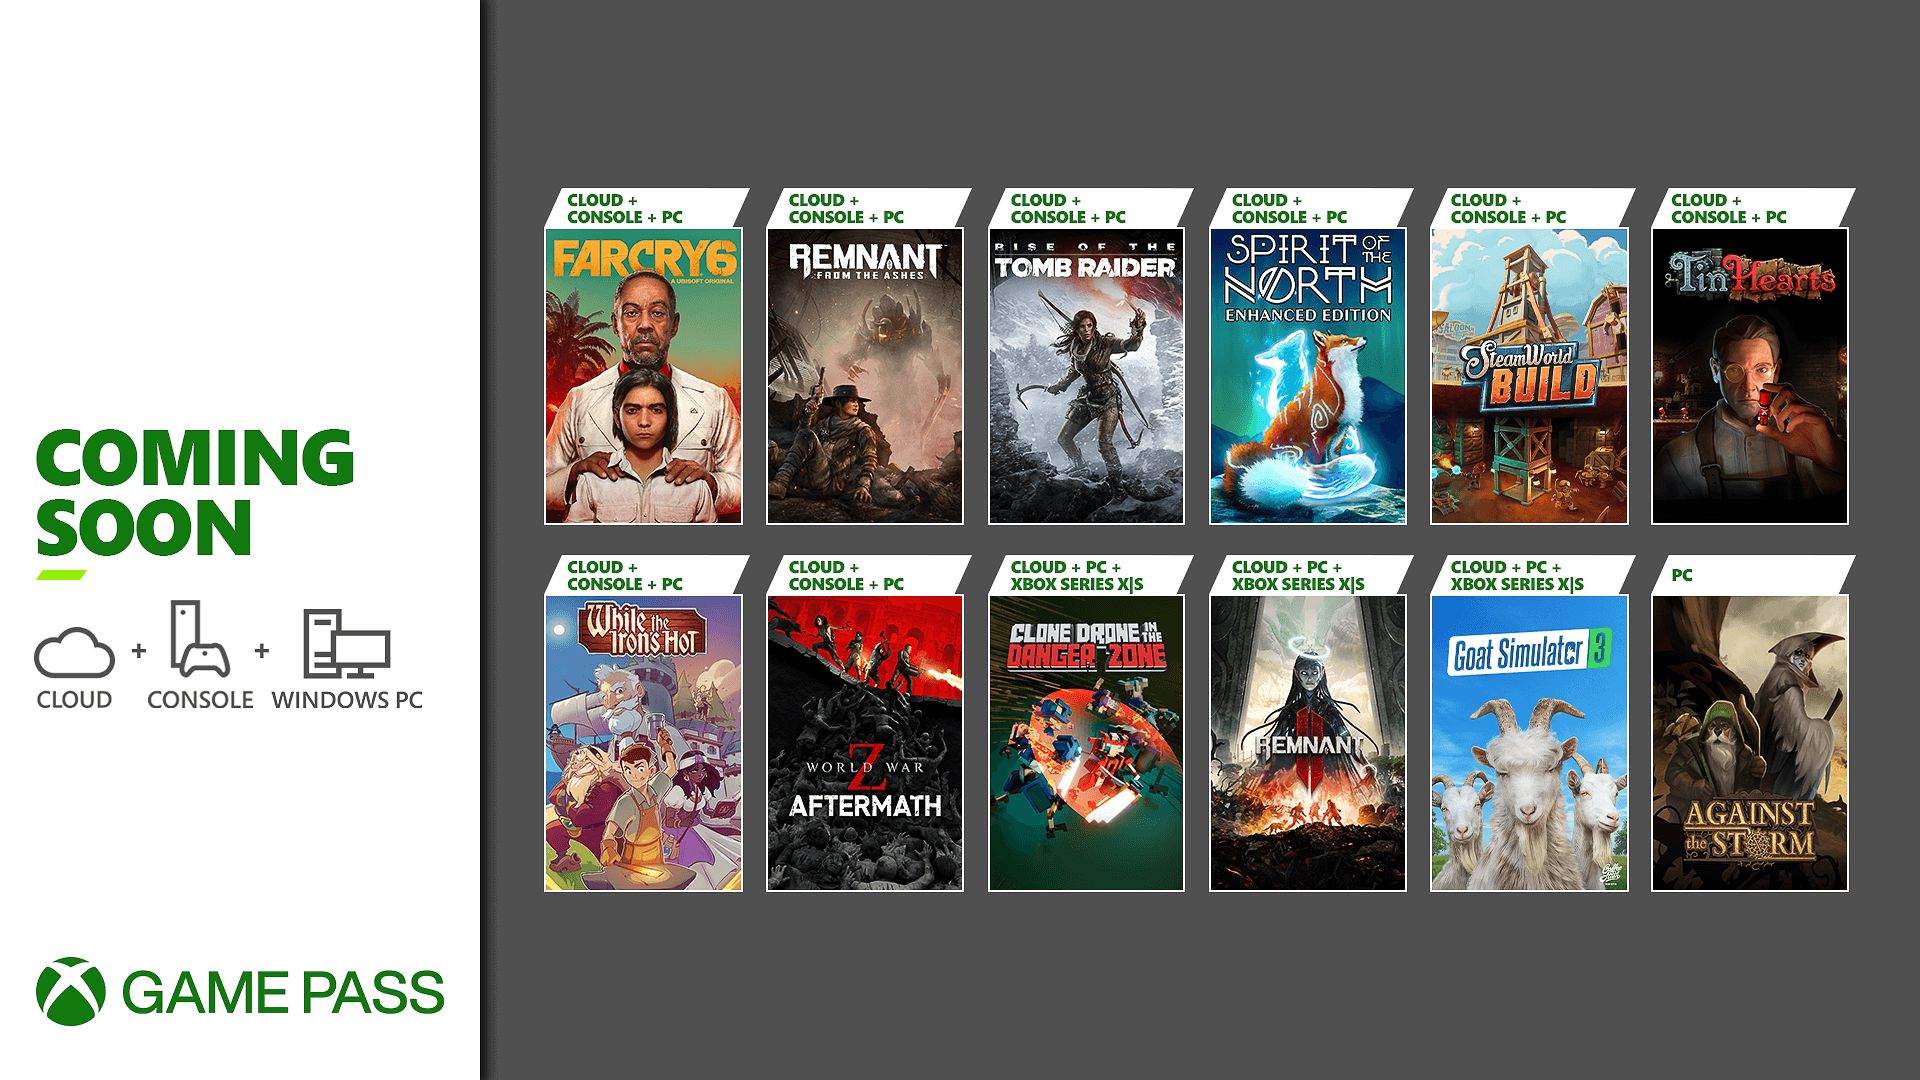 SAIU! Confira os novos jogos do Xbox Game Pass em novembro